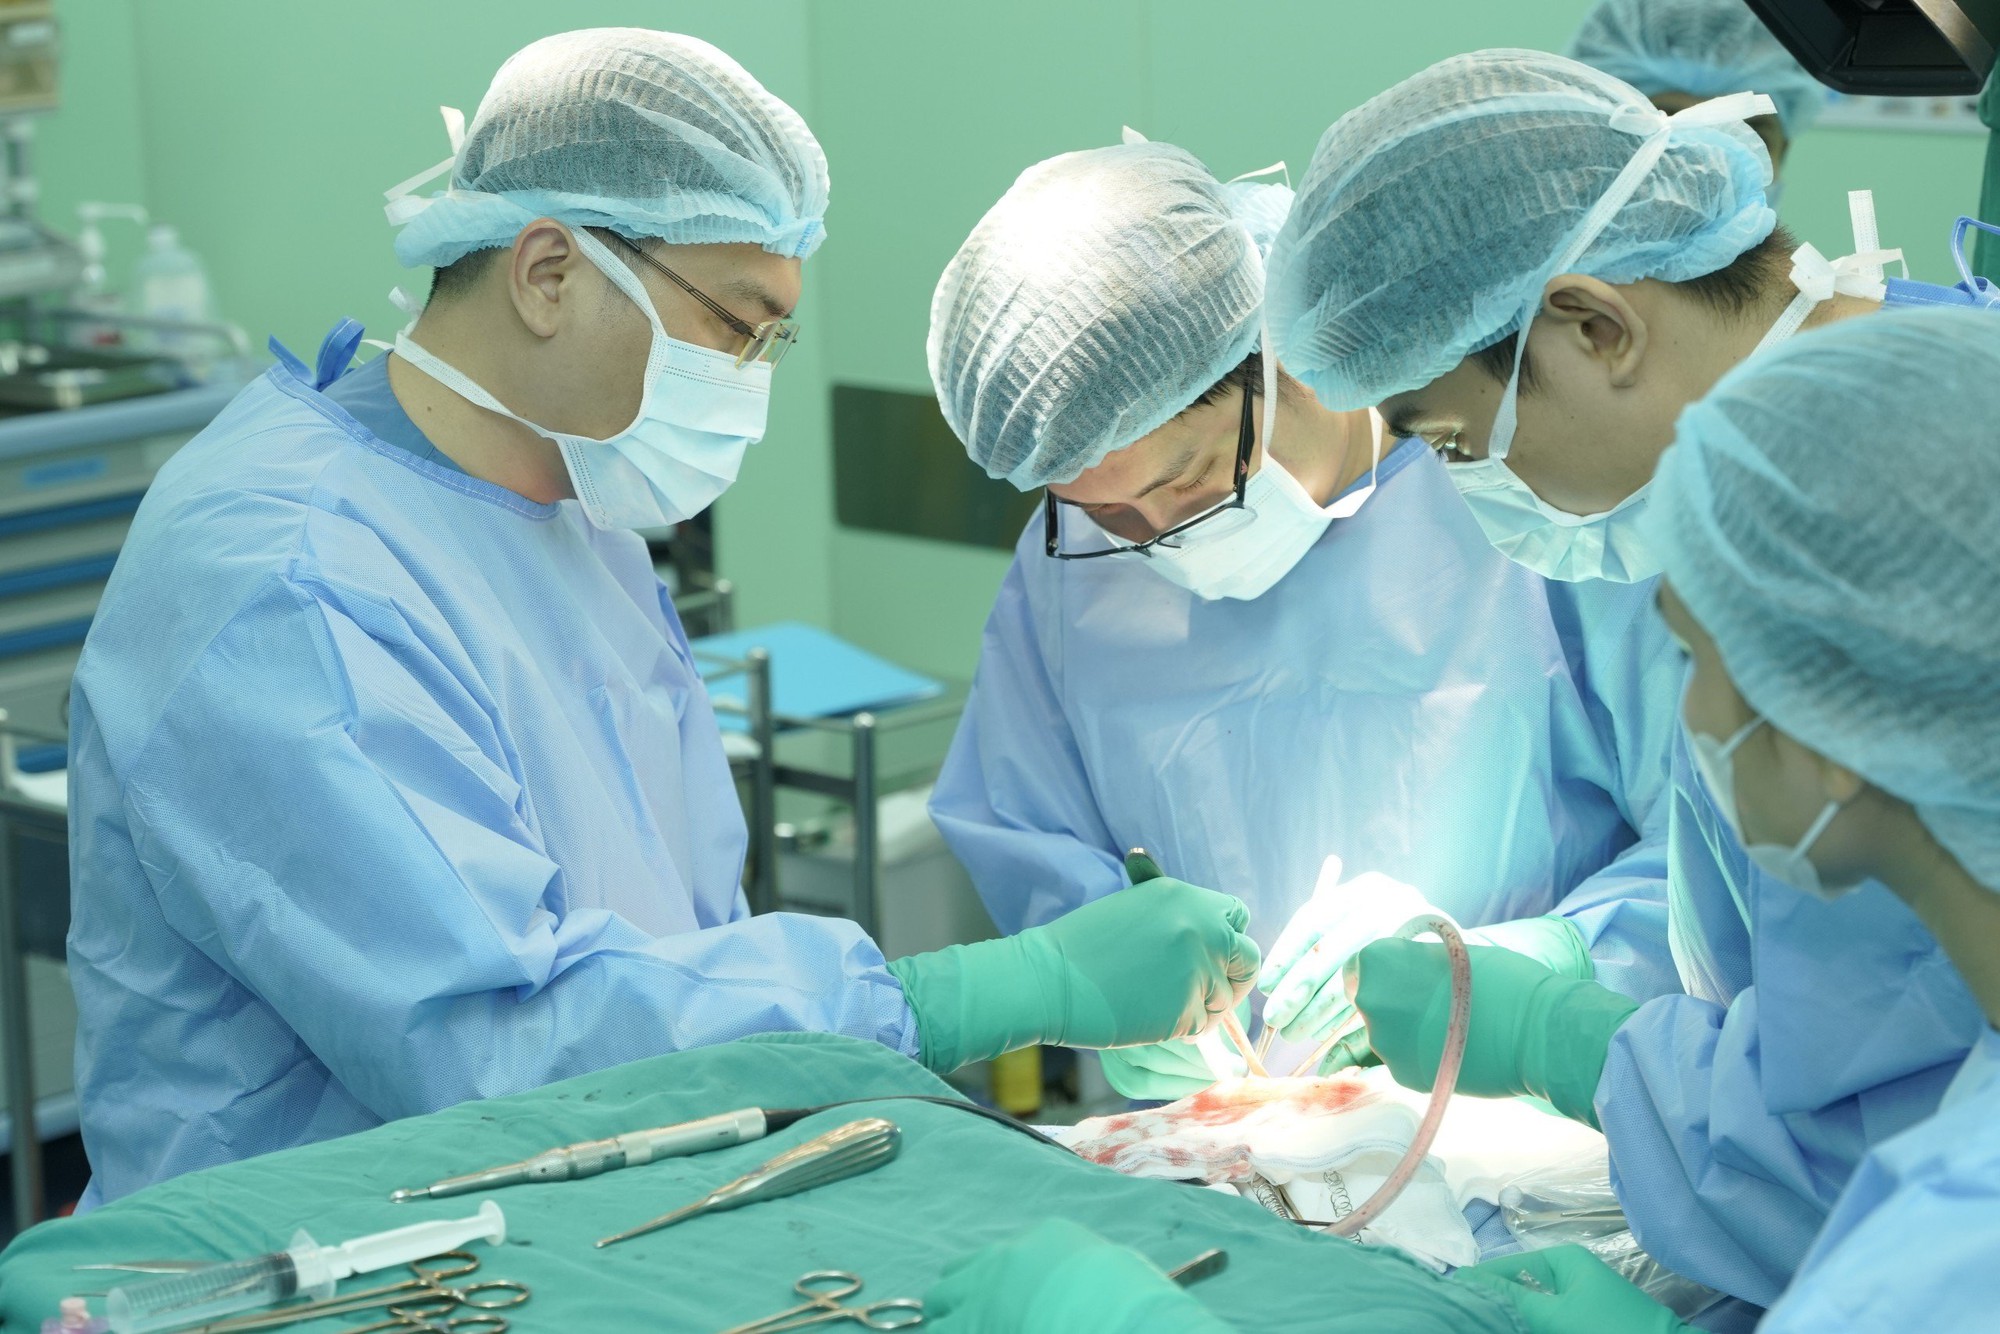 Hội nghị phẫu thuật động kinh châu Á lần đầu tổ chức tại Việt Nam - Ảnh 3.